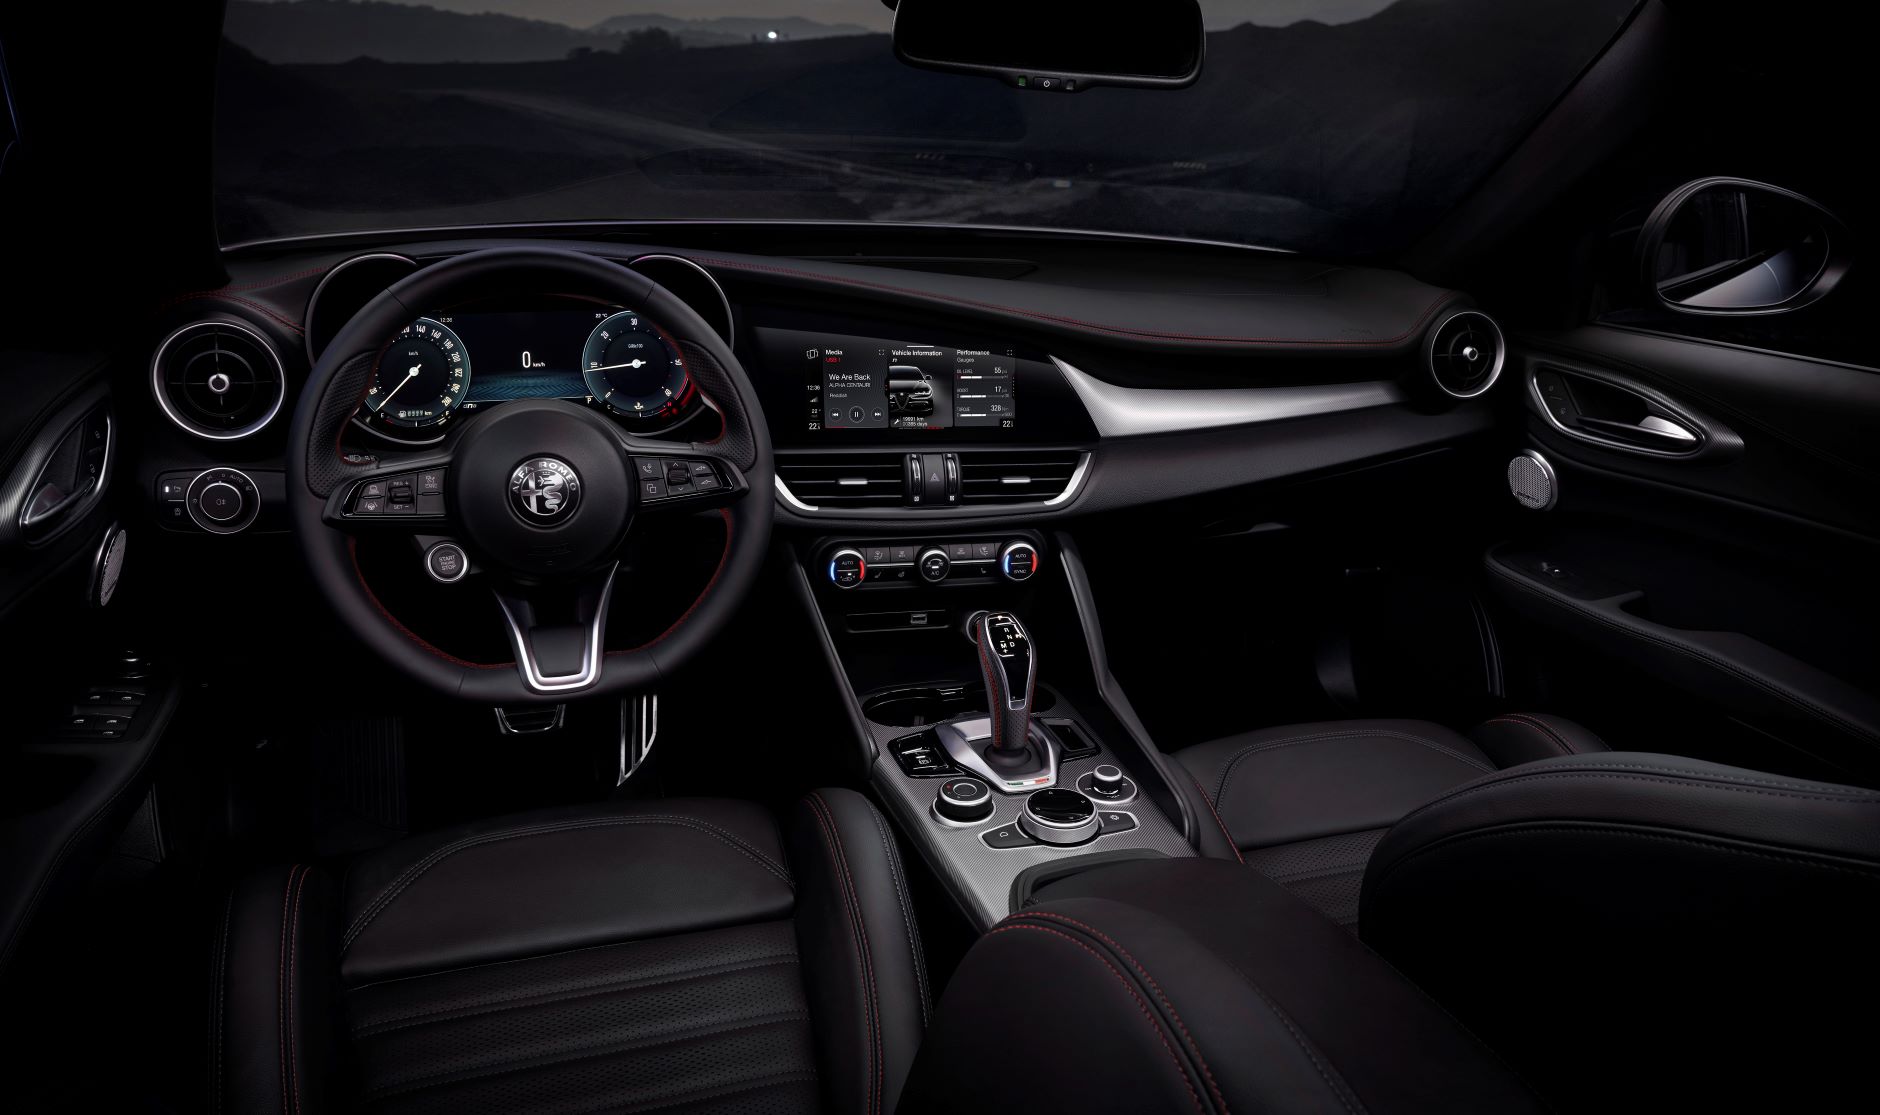 Interior of the 2023 Alfa Romeo Giulia sedan